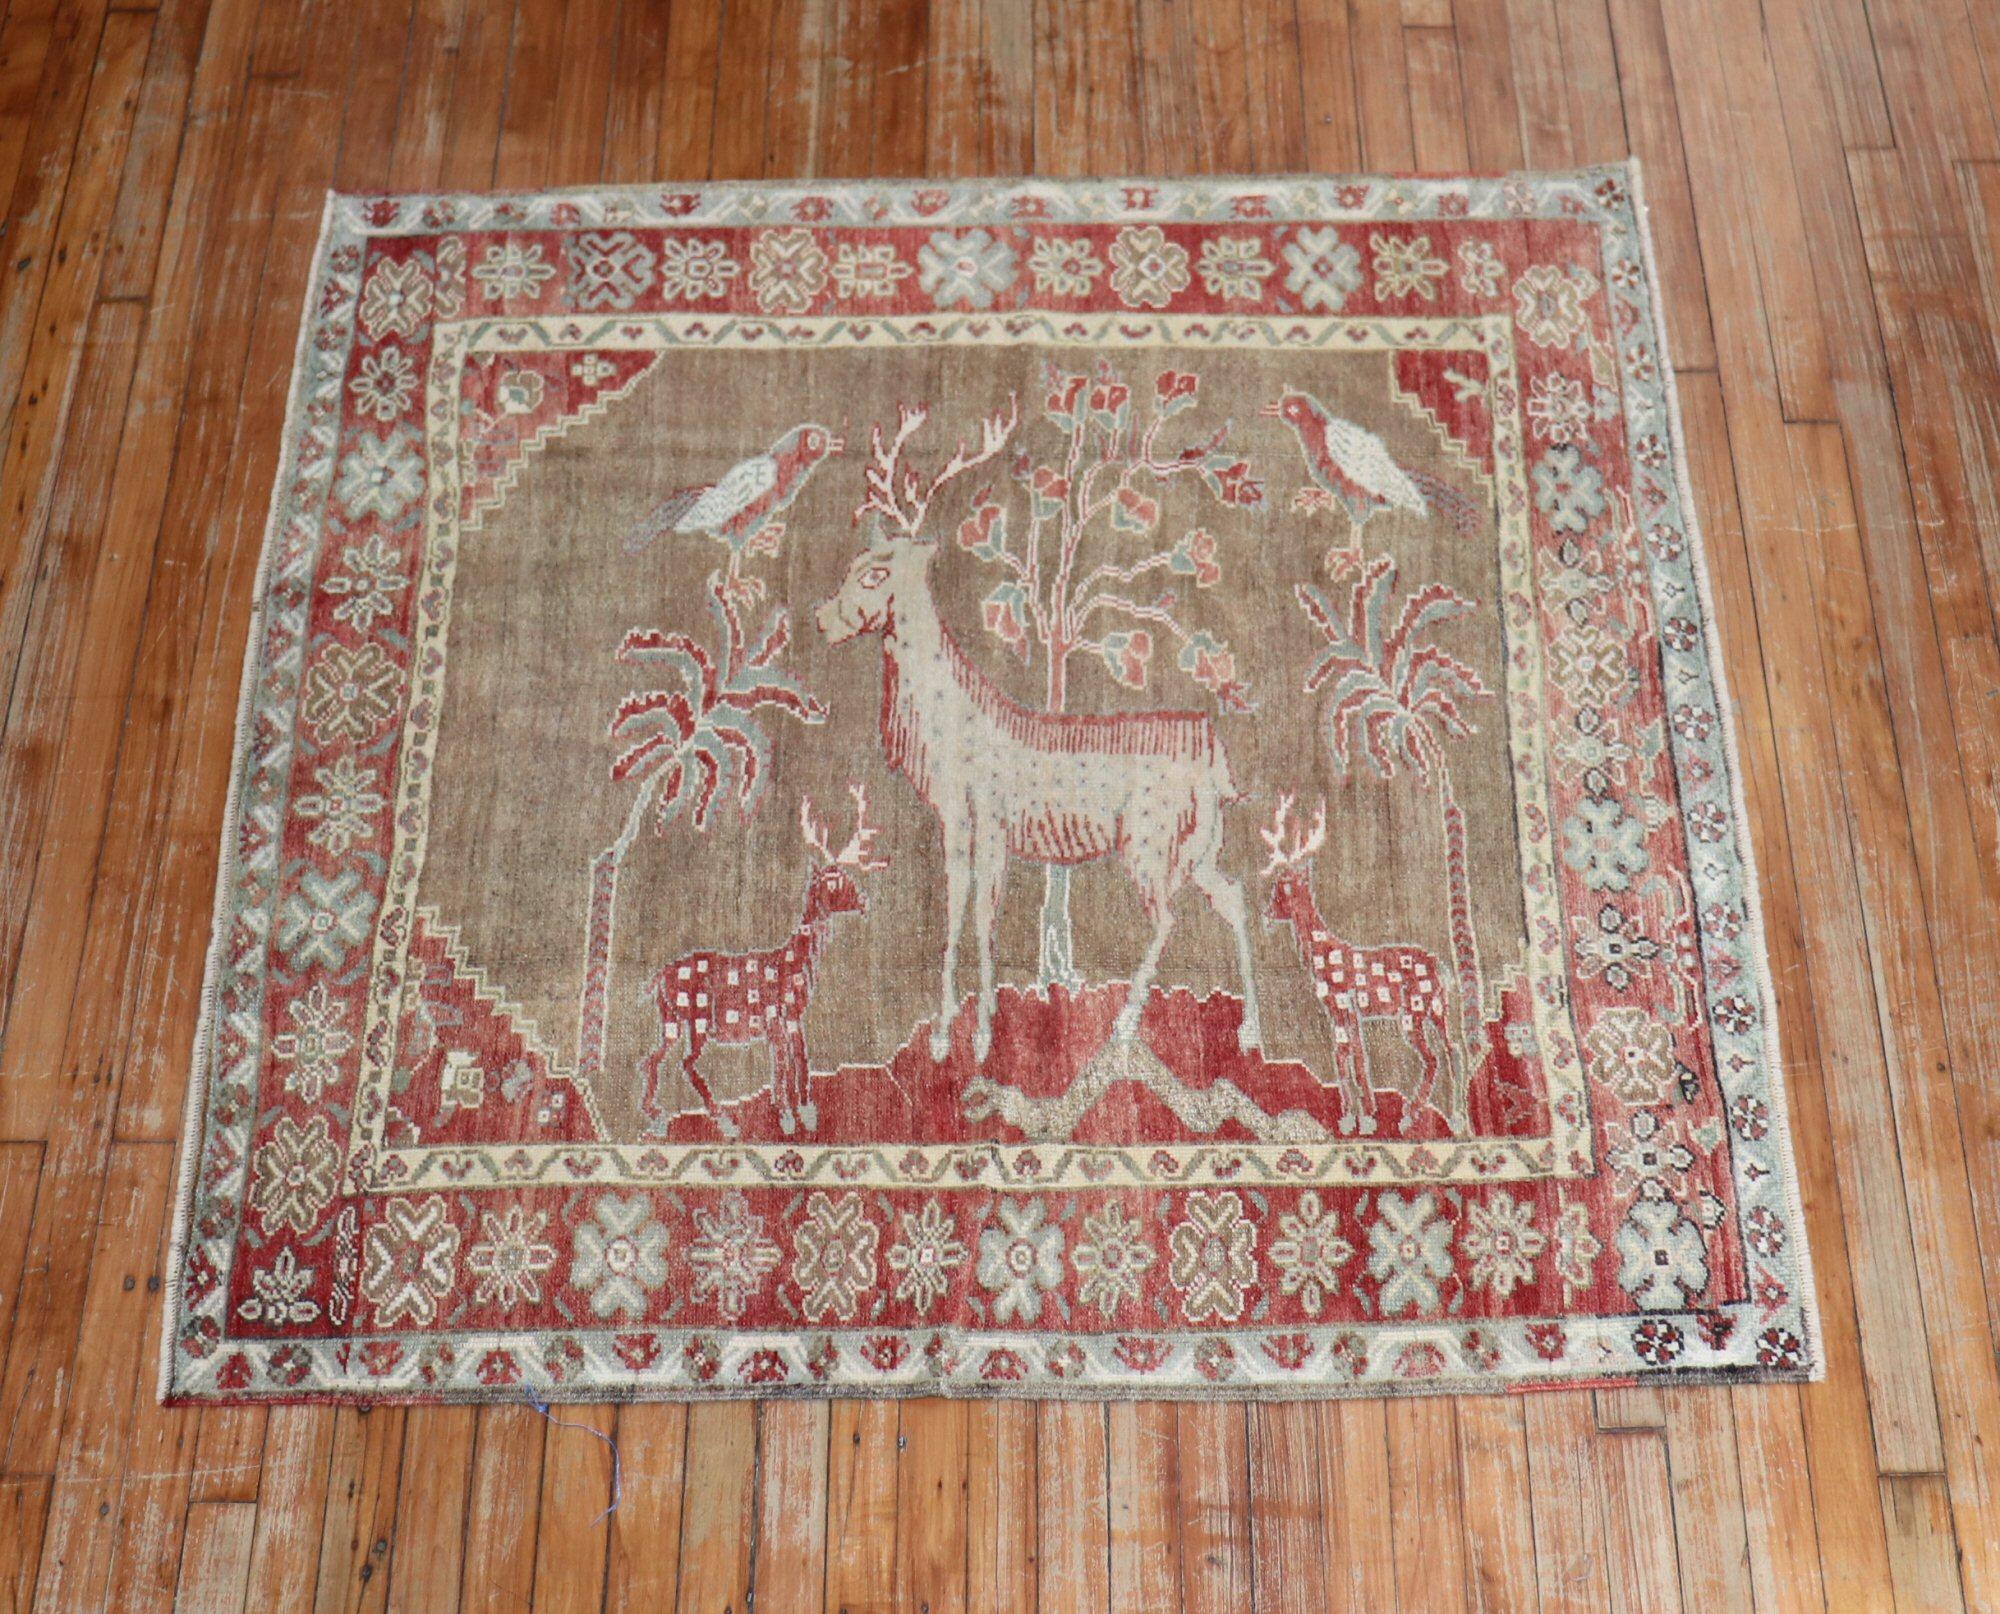 Einzigartiger, handgeknüpfter türkisch-anatolischer Teppich in blassem Pfirsich, braunen und grünen Akzenten, der 3 Hirsche und 2 Vögel darstellt, um 1940. Auch quadratische Form

Maße: 4'6